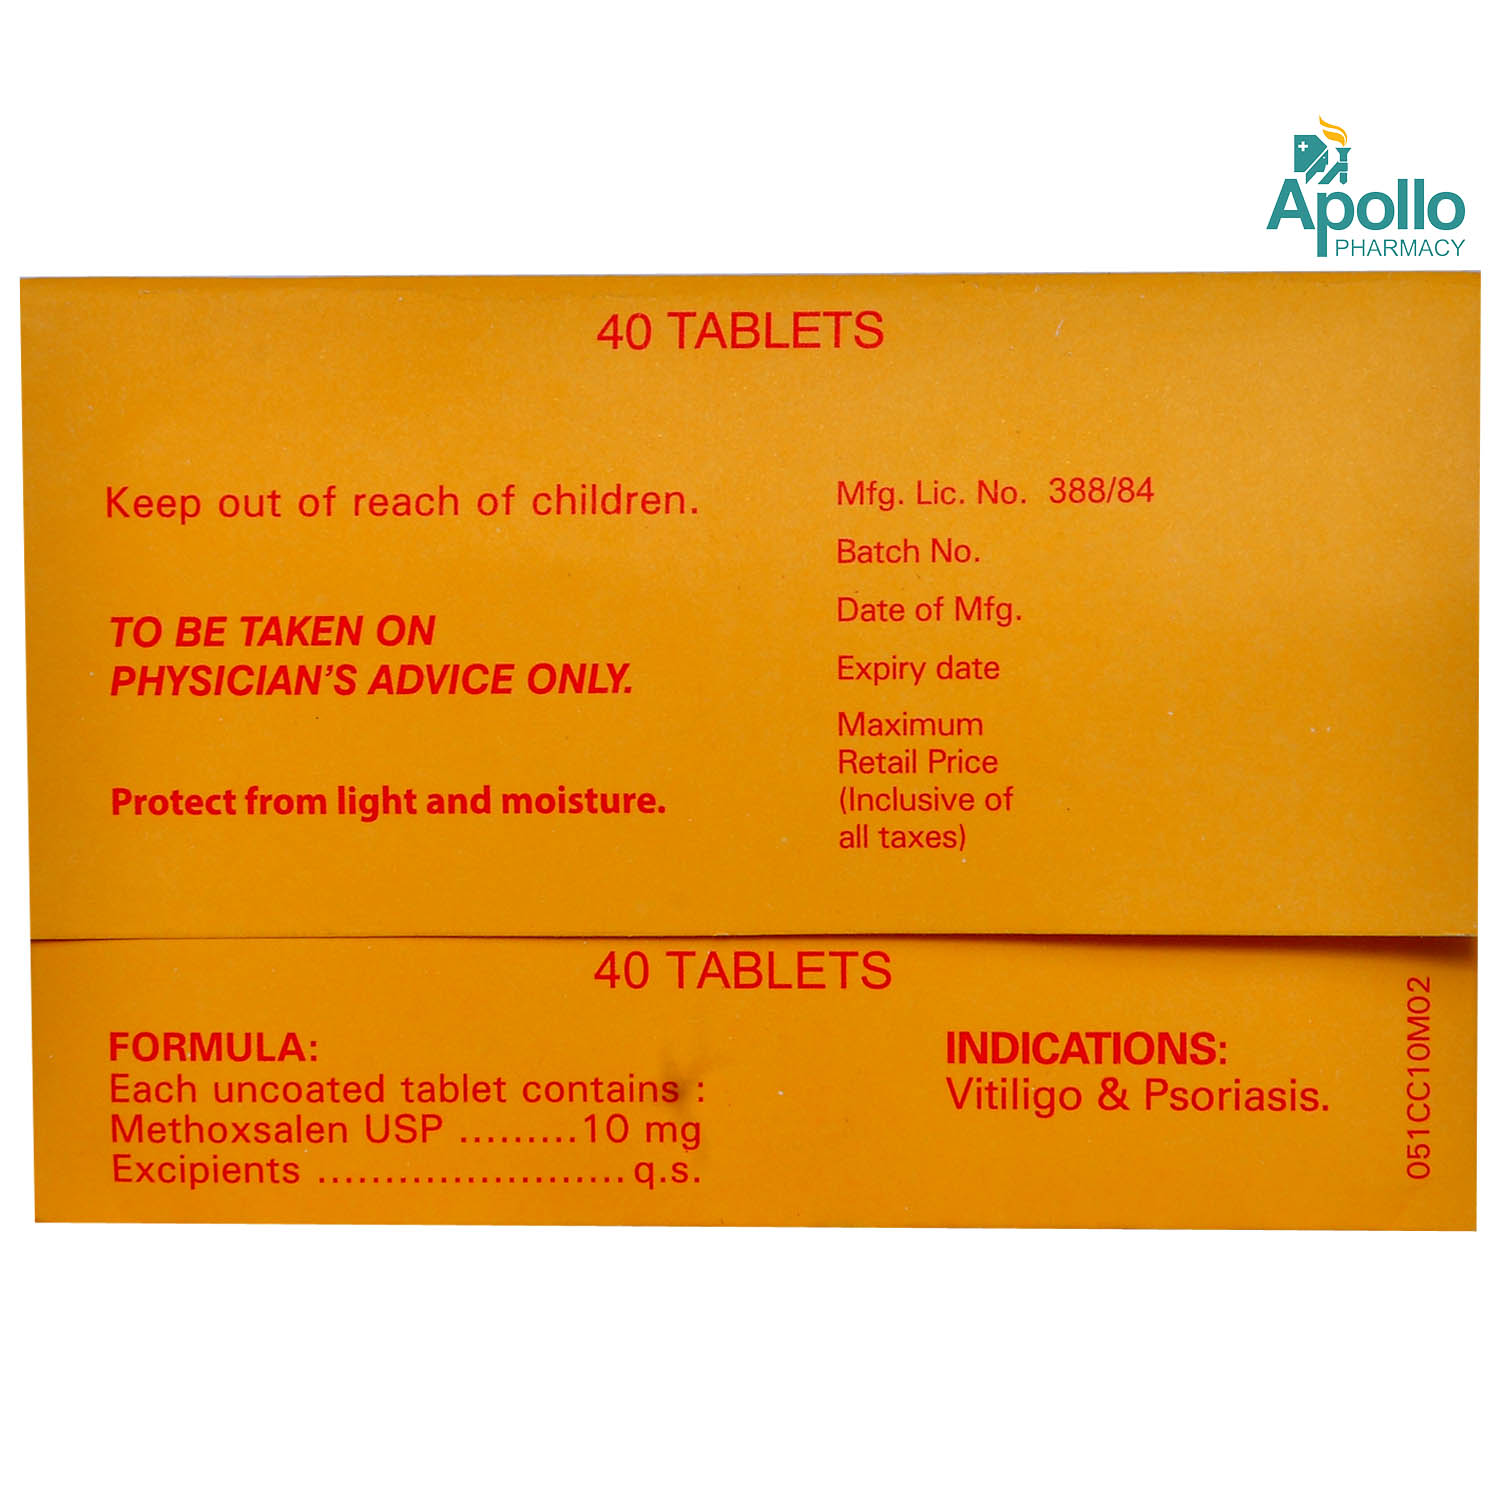 Melanocyl Tablet 40's, Pack of 40 TABLETS